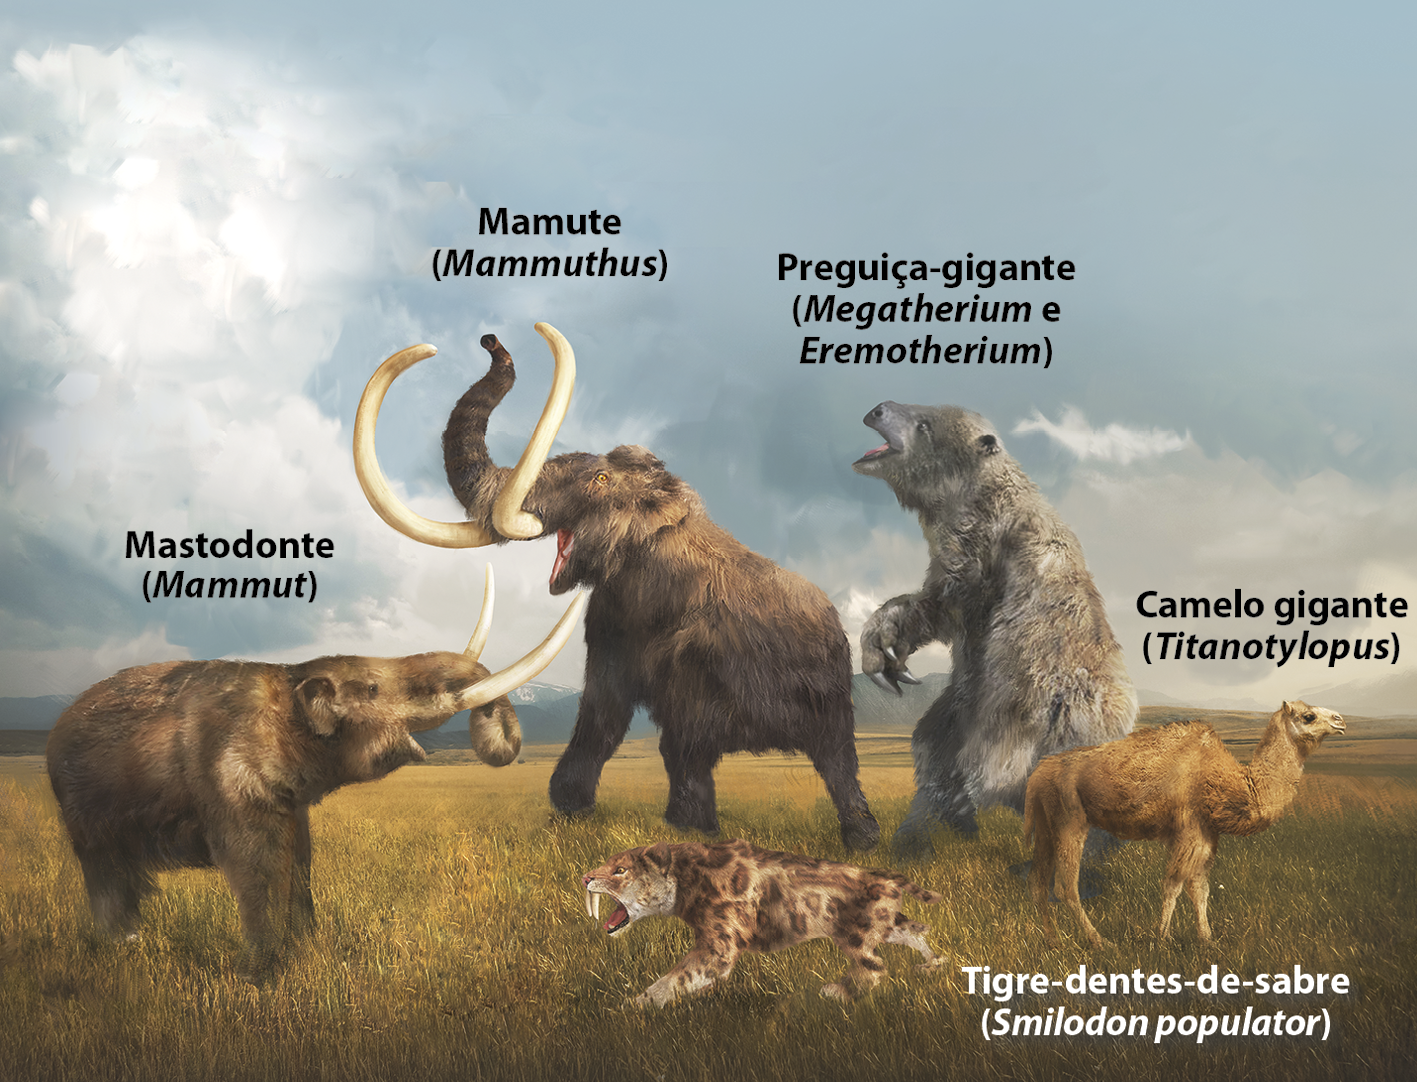 Ilustração. Cinco espécies de animais extintos em um campo aberto. Da esquerda para a direita: um mastodonte (Mammut), animal semelhante ao elefante, com grandes presas voltadas para cima; um mamute (Mammuthus), animal também semelhante ao elefante, porém mais alto do que o mastodonte e com presas maiores e mais curvadas;  um tigre-dentes-de-sabre (Smilodon populator), animal semelhante a um tigre, com grandes dentes caninos; uma preguiça-gigante (Megatherium e Etemotherium), animal semelhante ao bicho-preguiça, porém de dimensões muito maiores; e um camelo gigante (Titanotylopus), animal com uma corcova nas costas, semelhante ao camelo, porém mais alto.